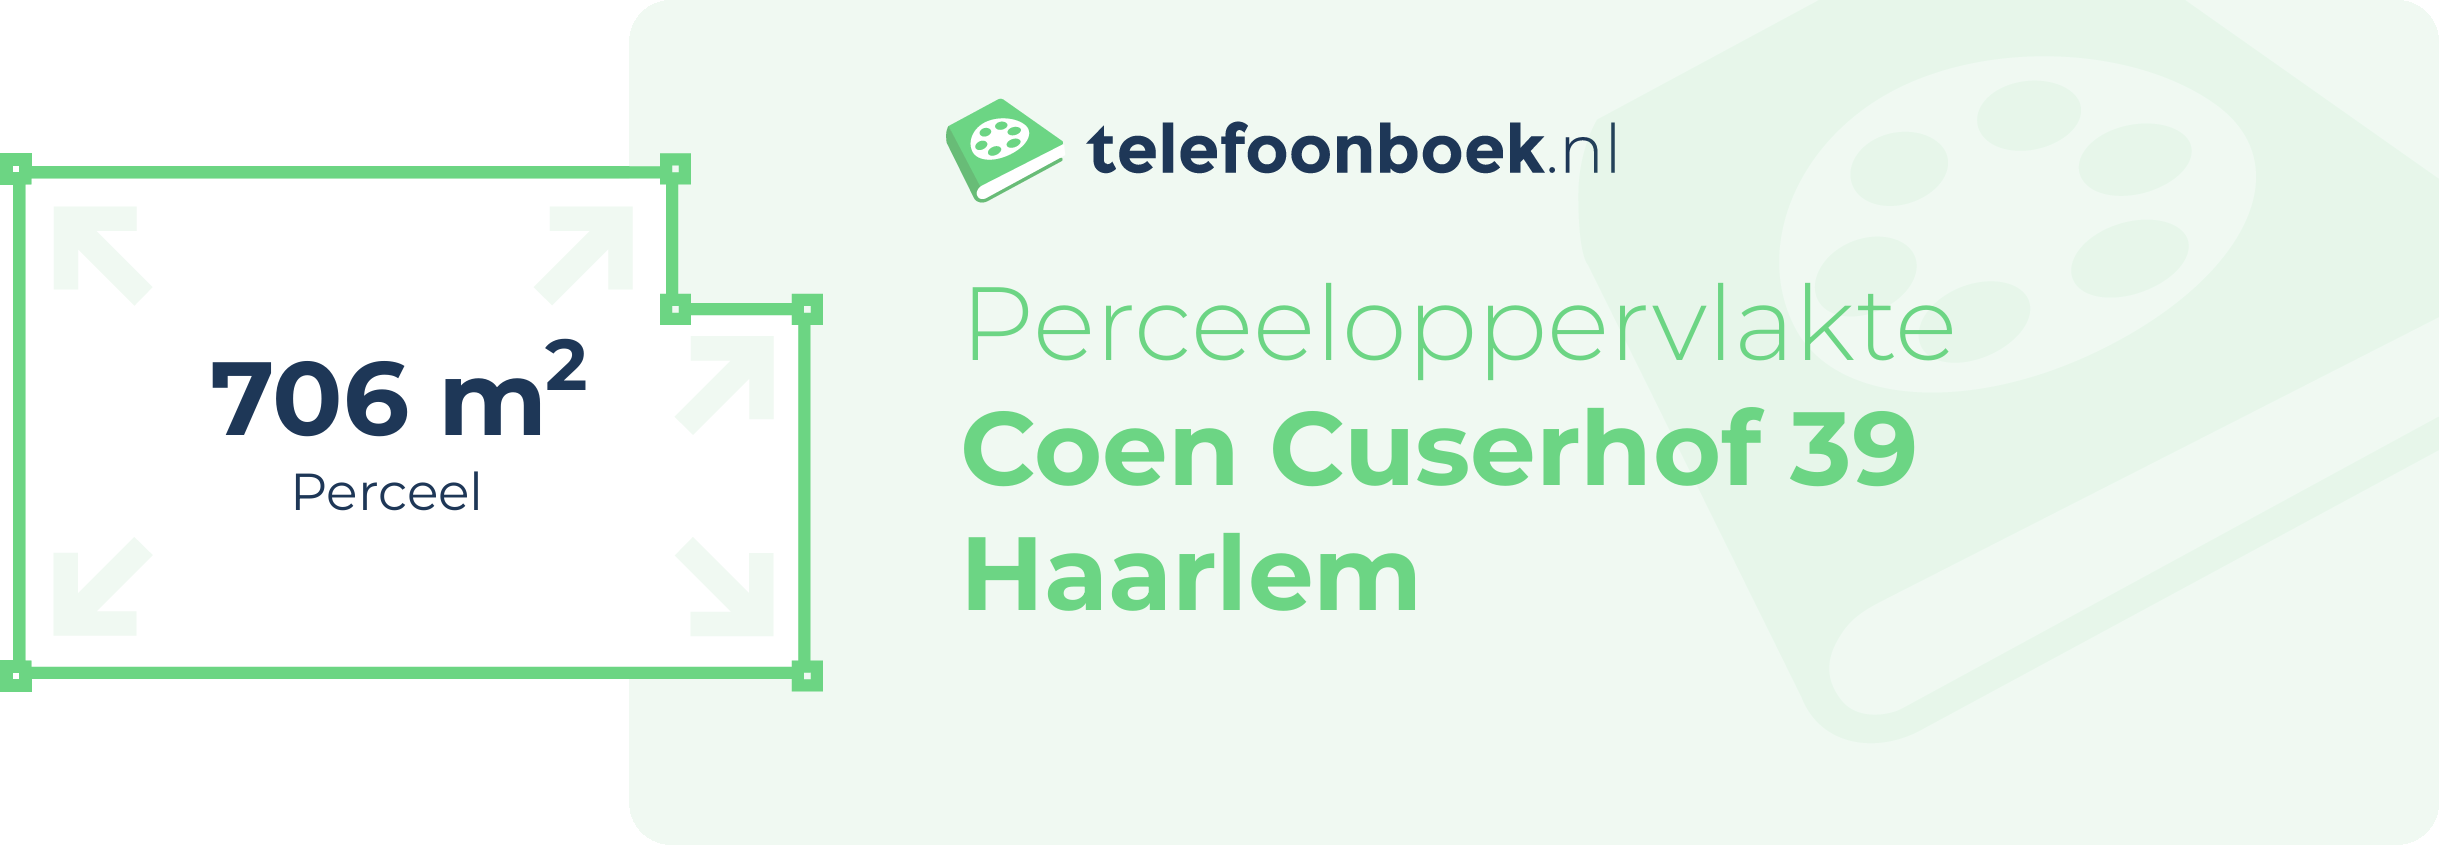 Perceeloppervlakte Coen Cuserhof 39 Haarlem